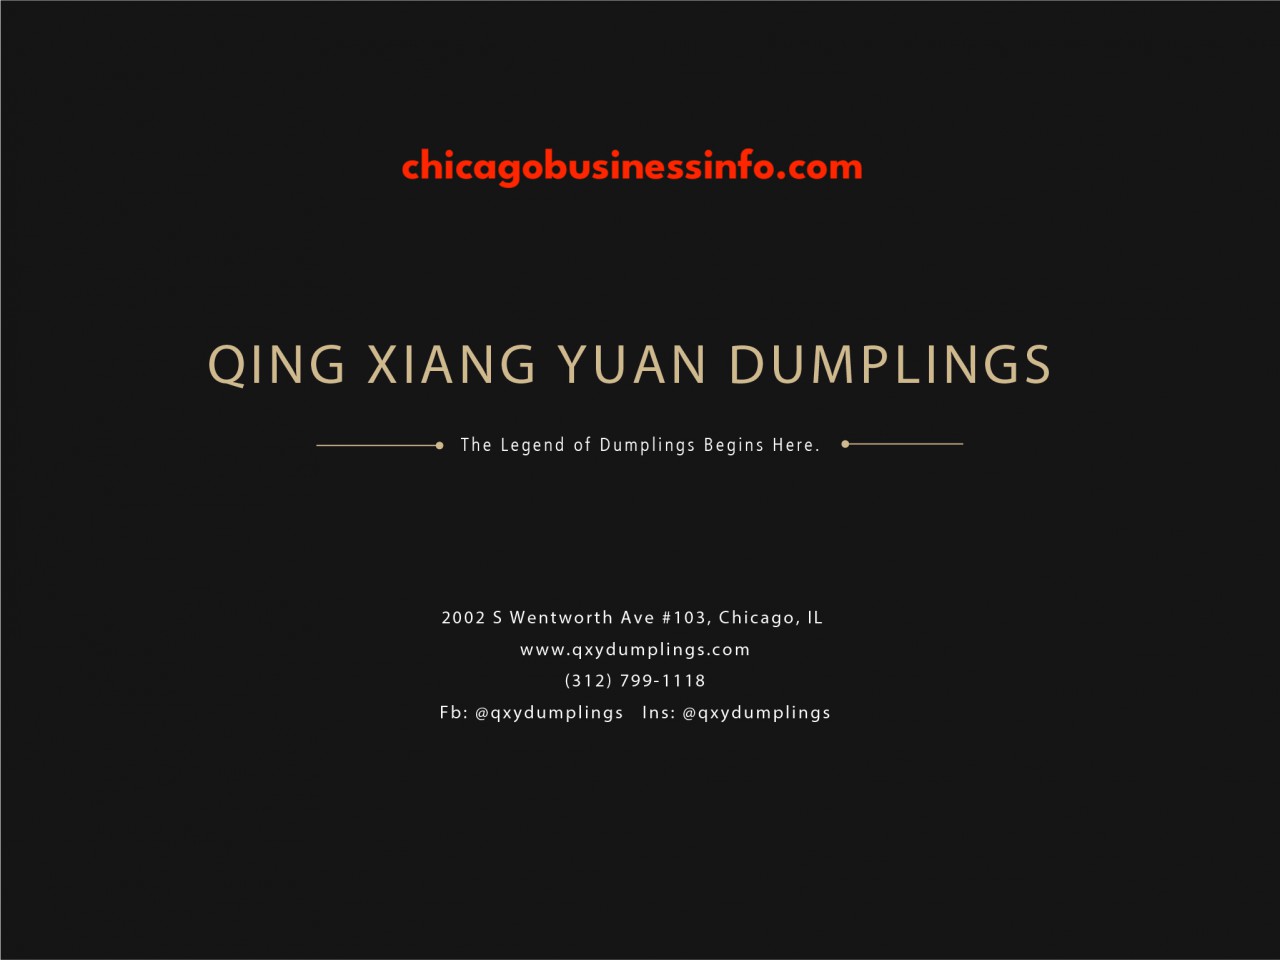 Qing Xiang Yuan Dumplings Chicago Menu 1